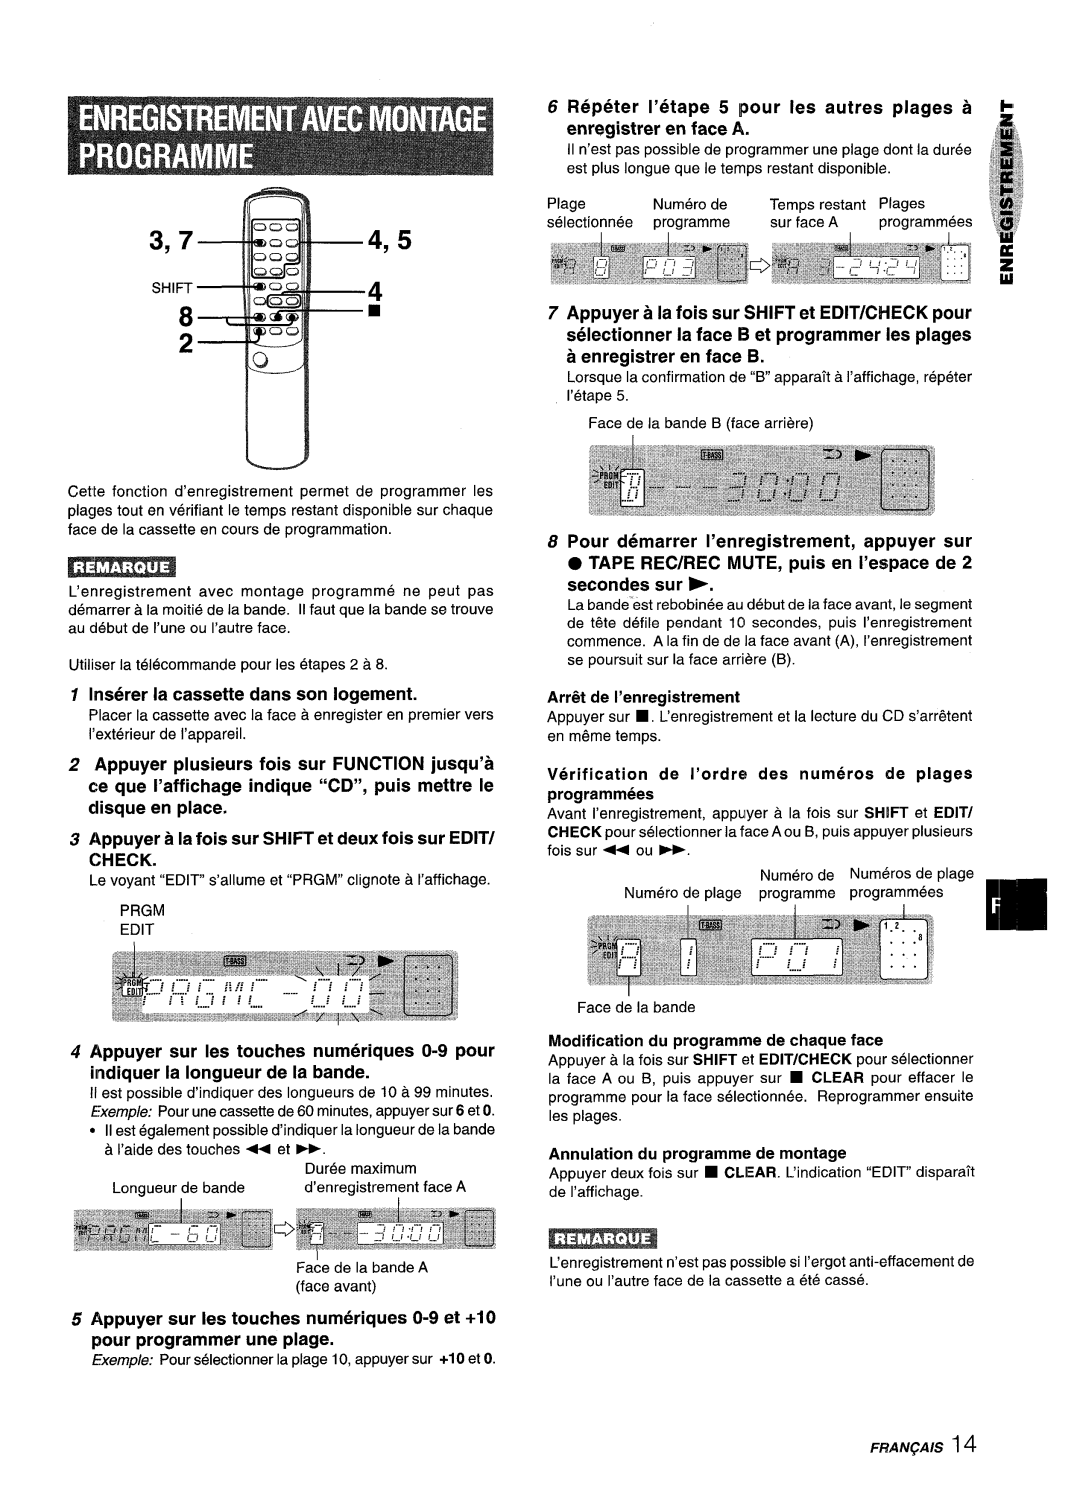 Aiwa XM-M25 manual 3,74,5, Repeter I’etape 5 pour Ies autres plages a enregistrer en face A, Arr6it de I’enregistrement 